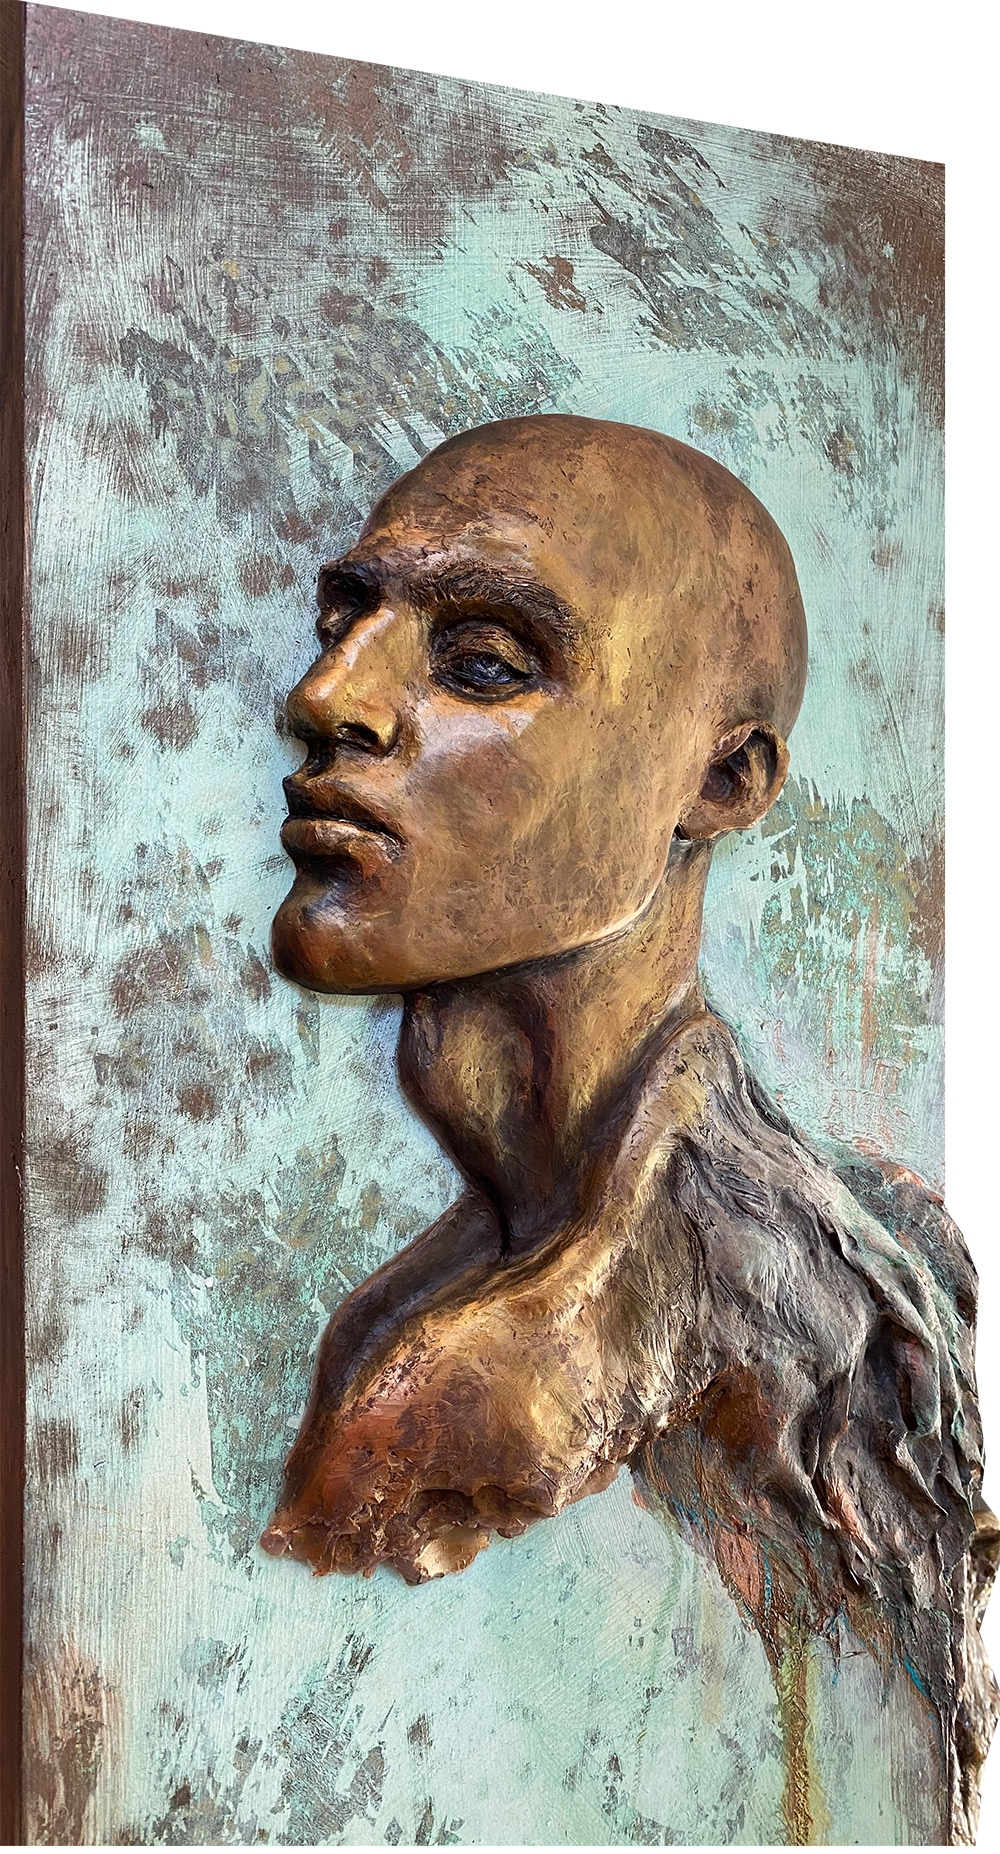 Close up of Icarus, sculptural portrait